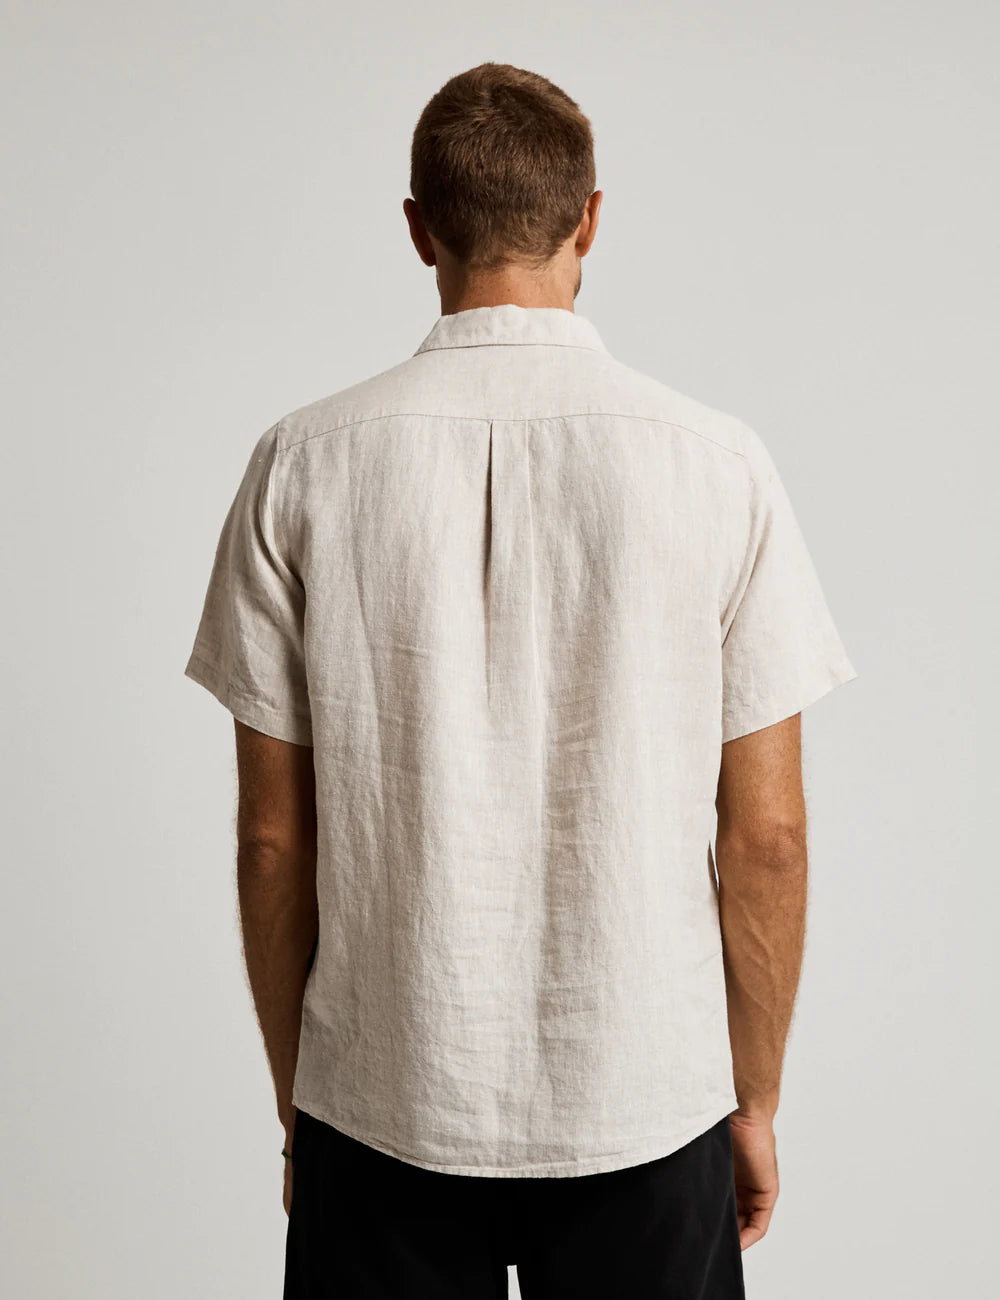 Mr simple linen short sleeve shirt - natural